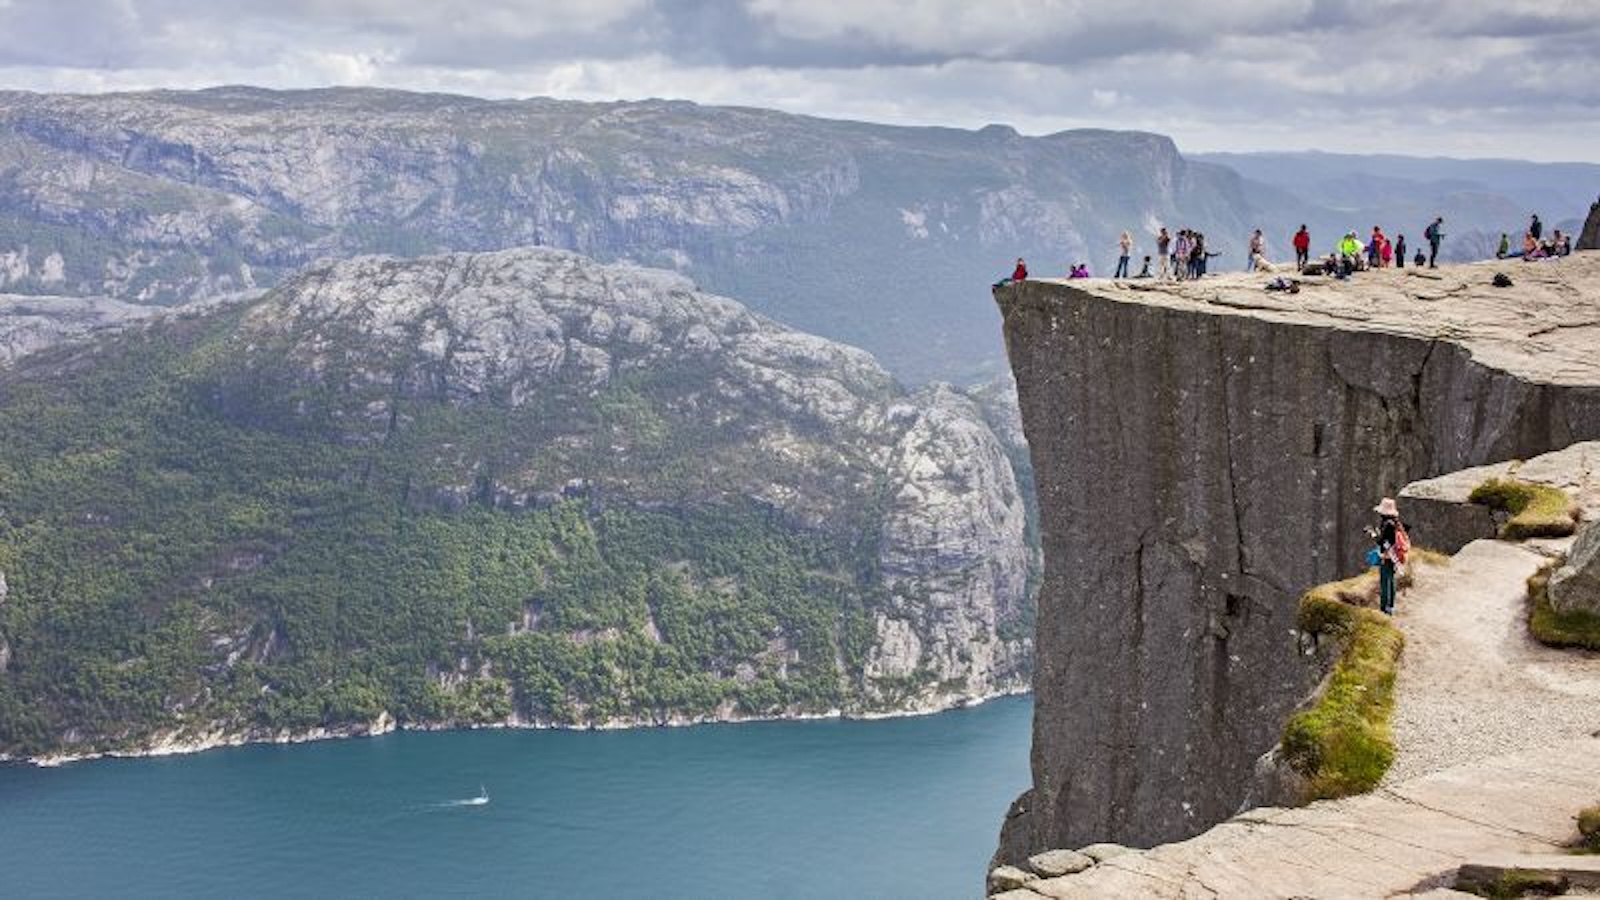 Seorang pria meninggal setelah jatuh dari tebing “Mission Impossible” di Norwegia